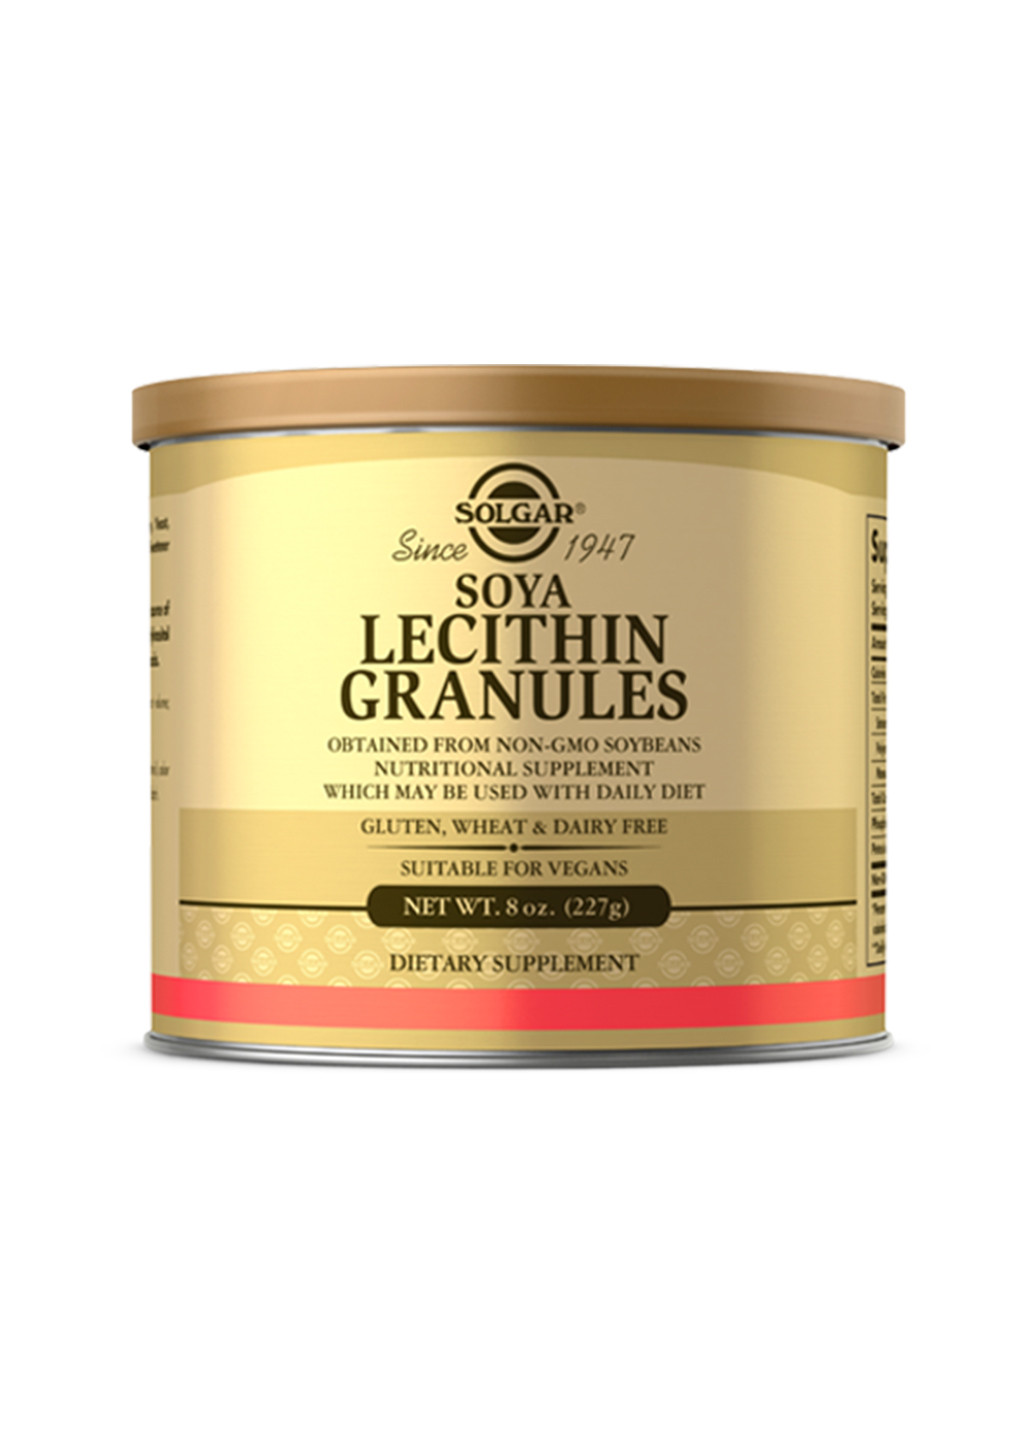 Лецитин для печени, сердца и нервной системы Lecithin Granules - 8 oz Solgar (241261147)